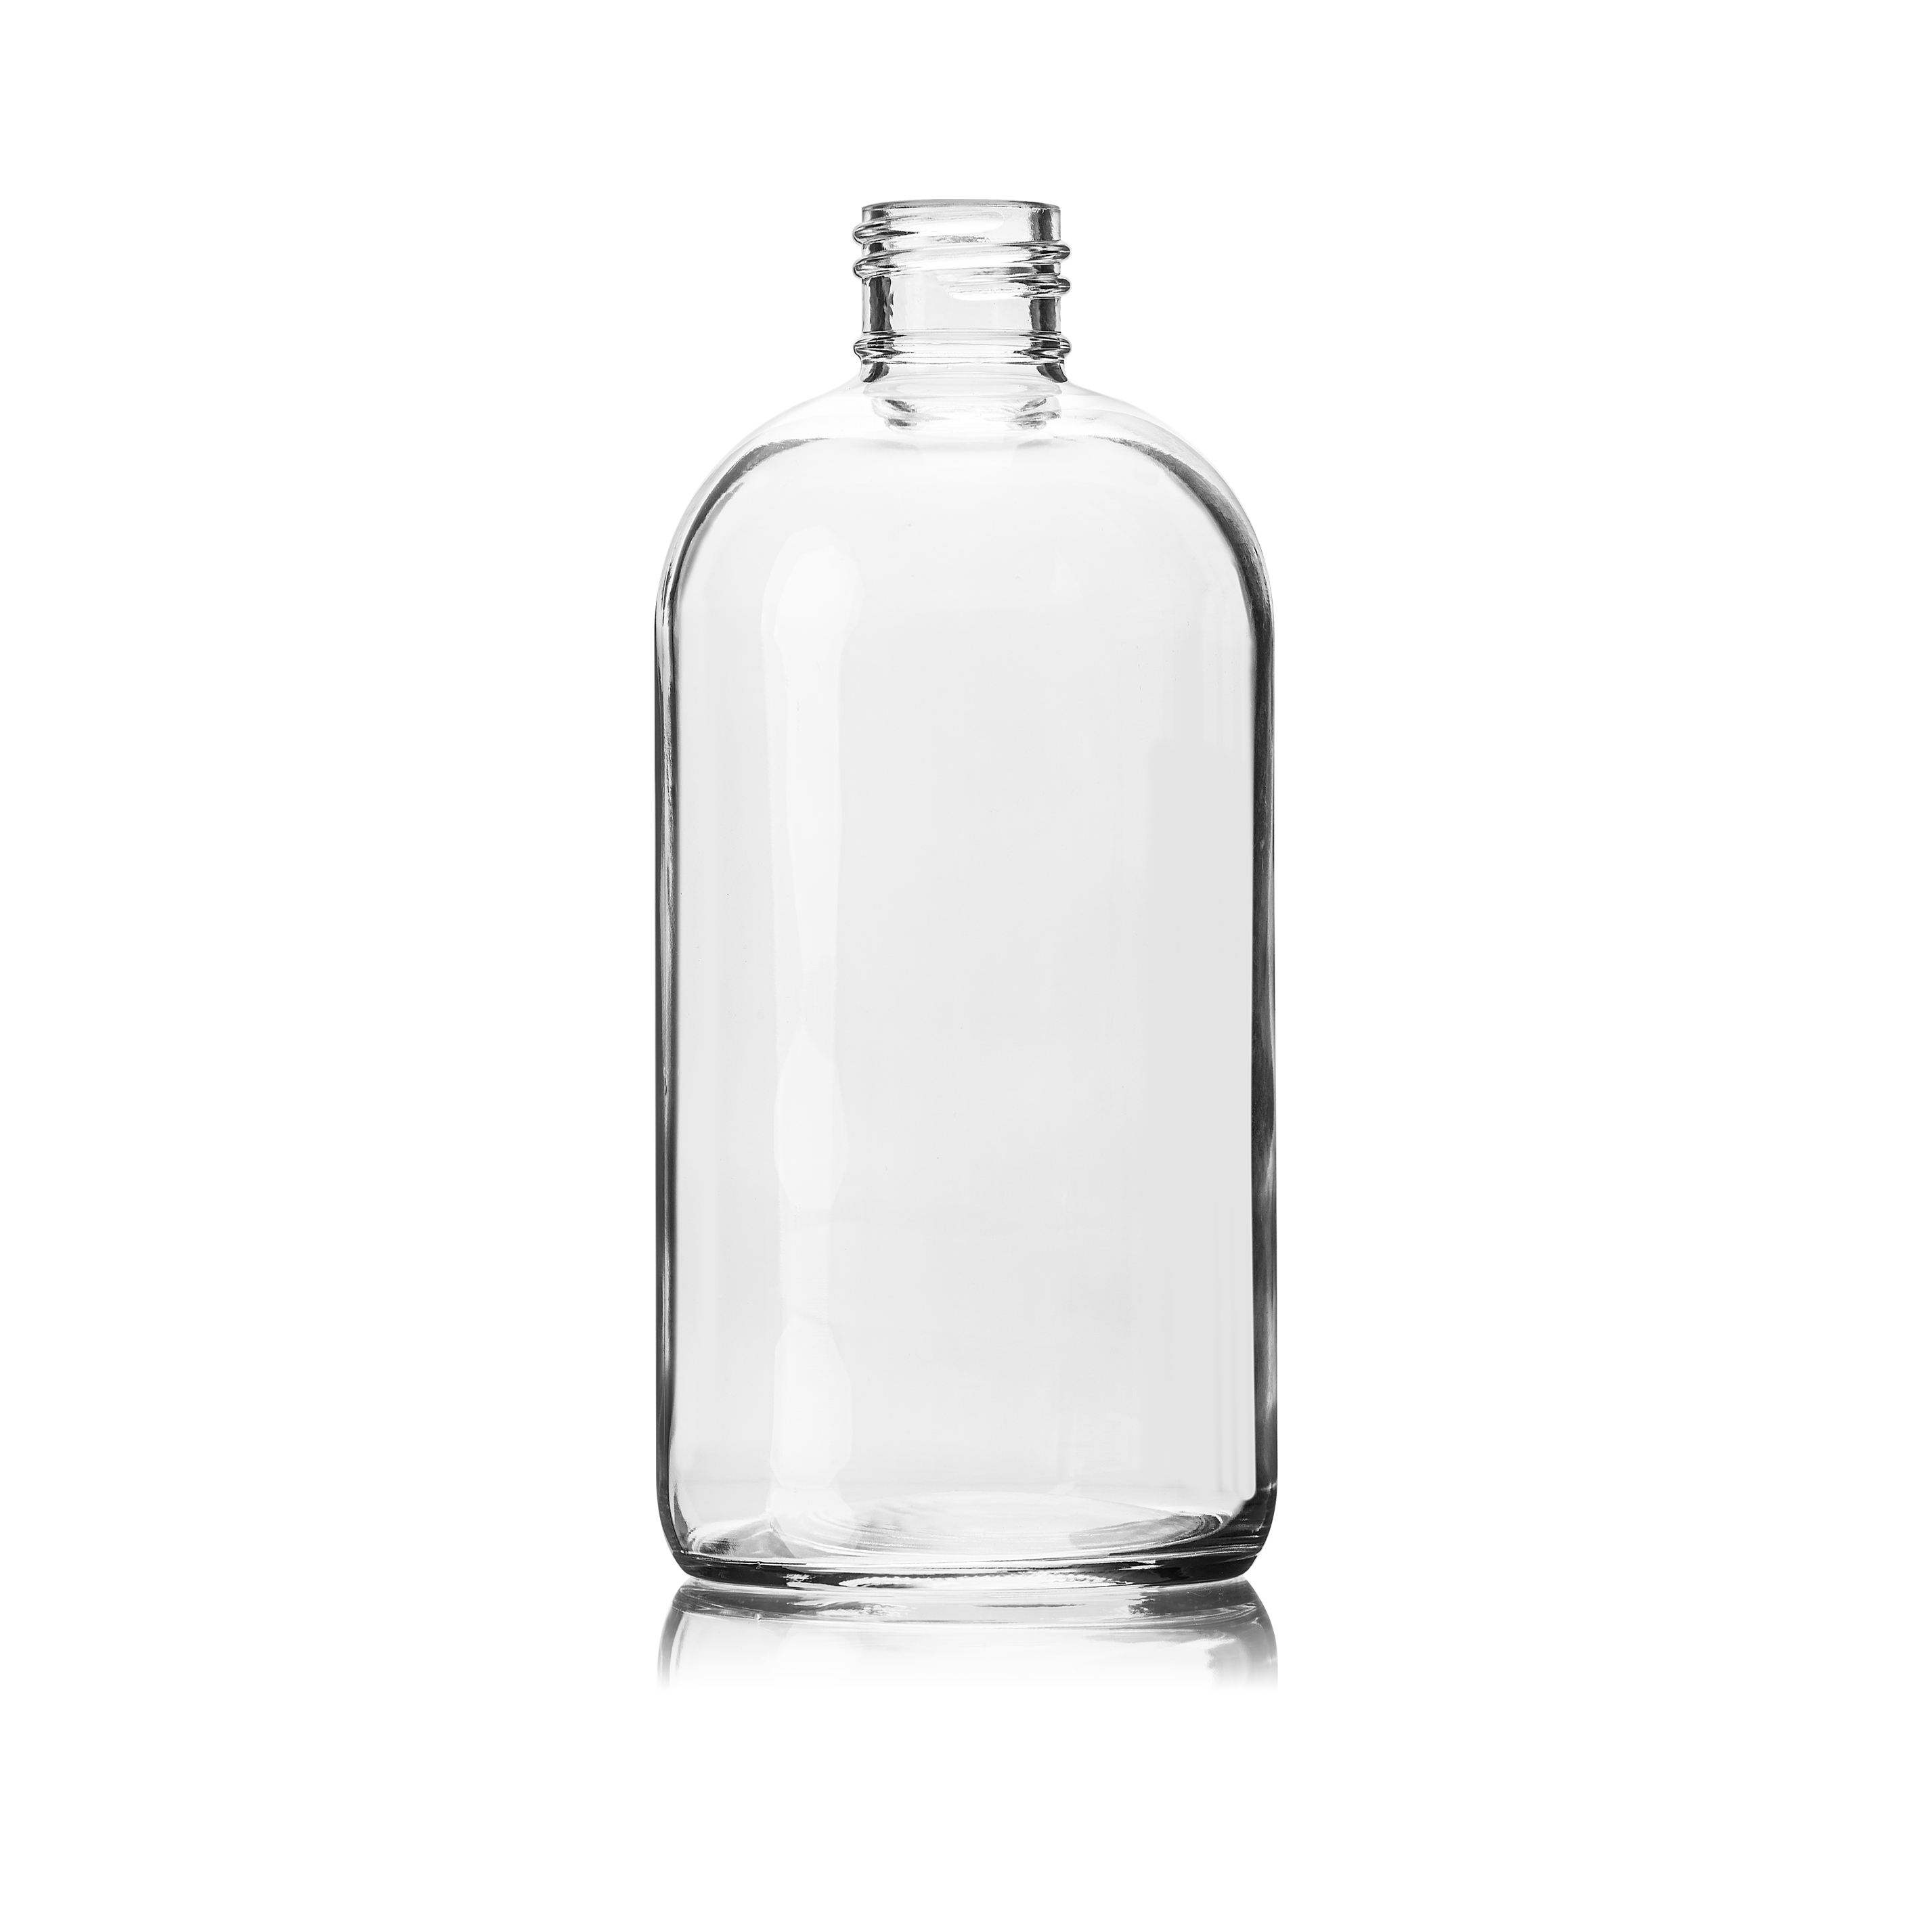 Cosmetic bottle Linden Light Weight 500ml, 28/410, Flint.